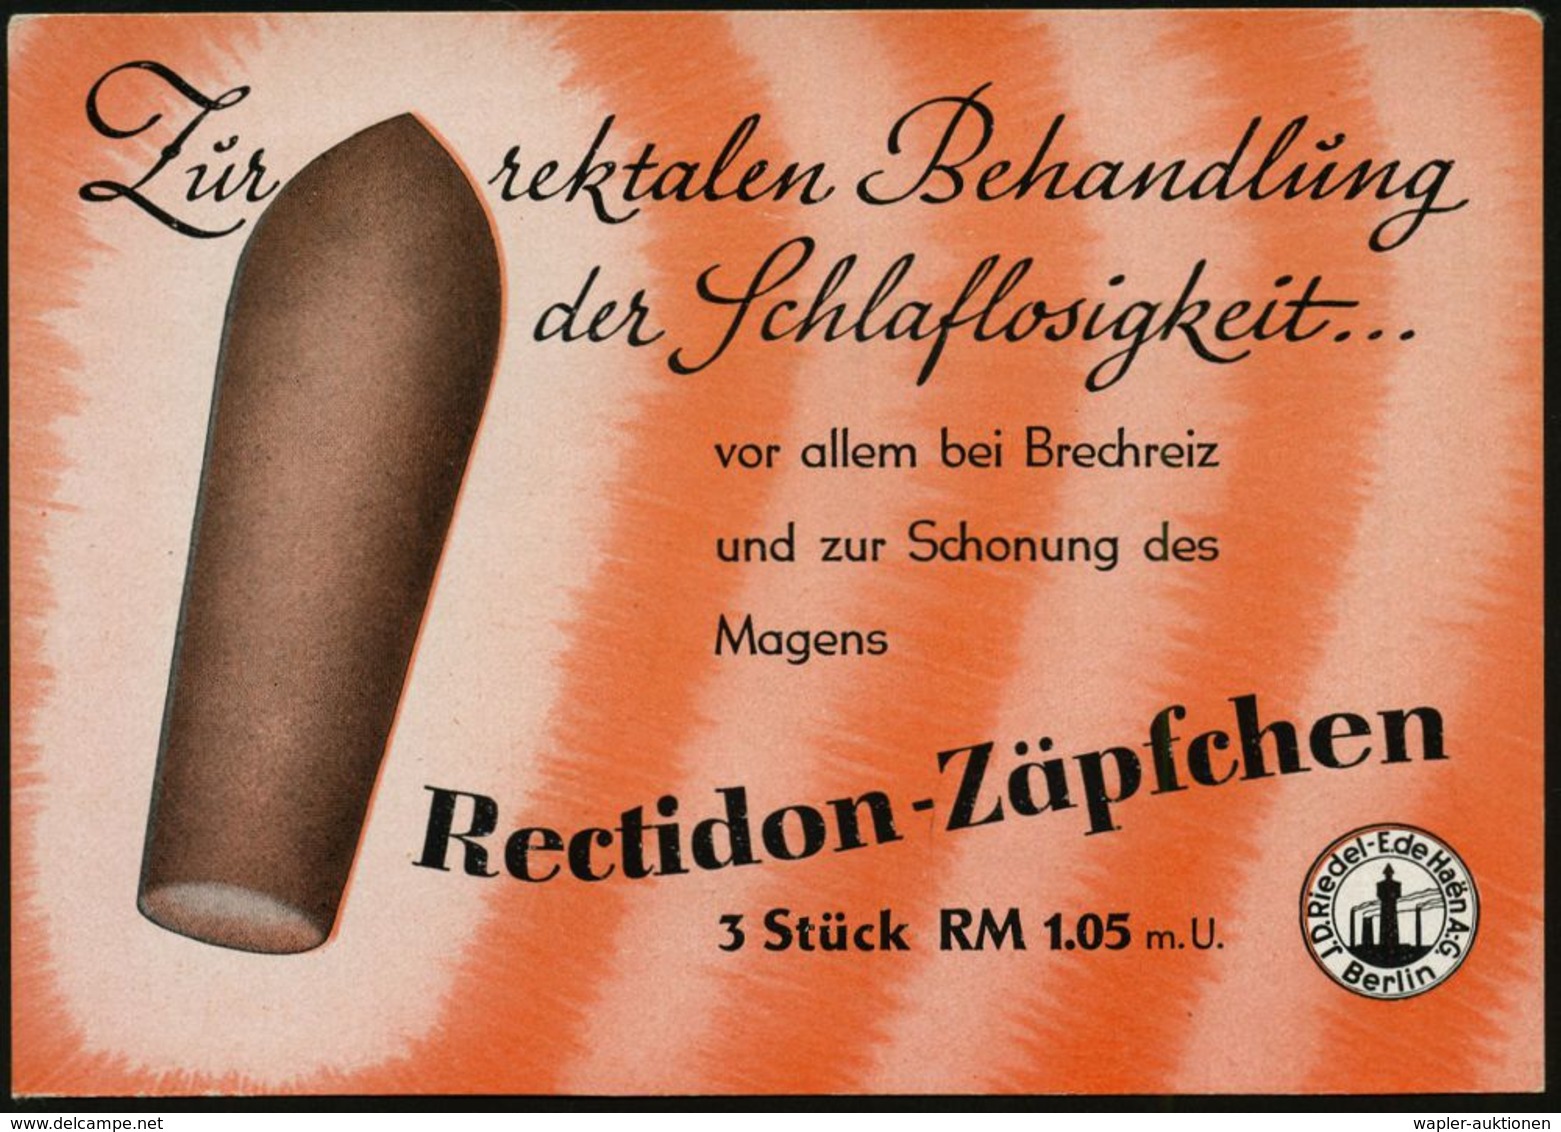 BERLIN-BRITZ 1/ Ceadon/ Ein Natürliches/ Stuhlregelungsmittel.. 1942 (28.9.) AFS Auf Reklame-Ak.: Recidon-Zäpfchen.. (Re - Medizin